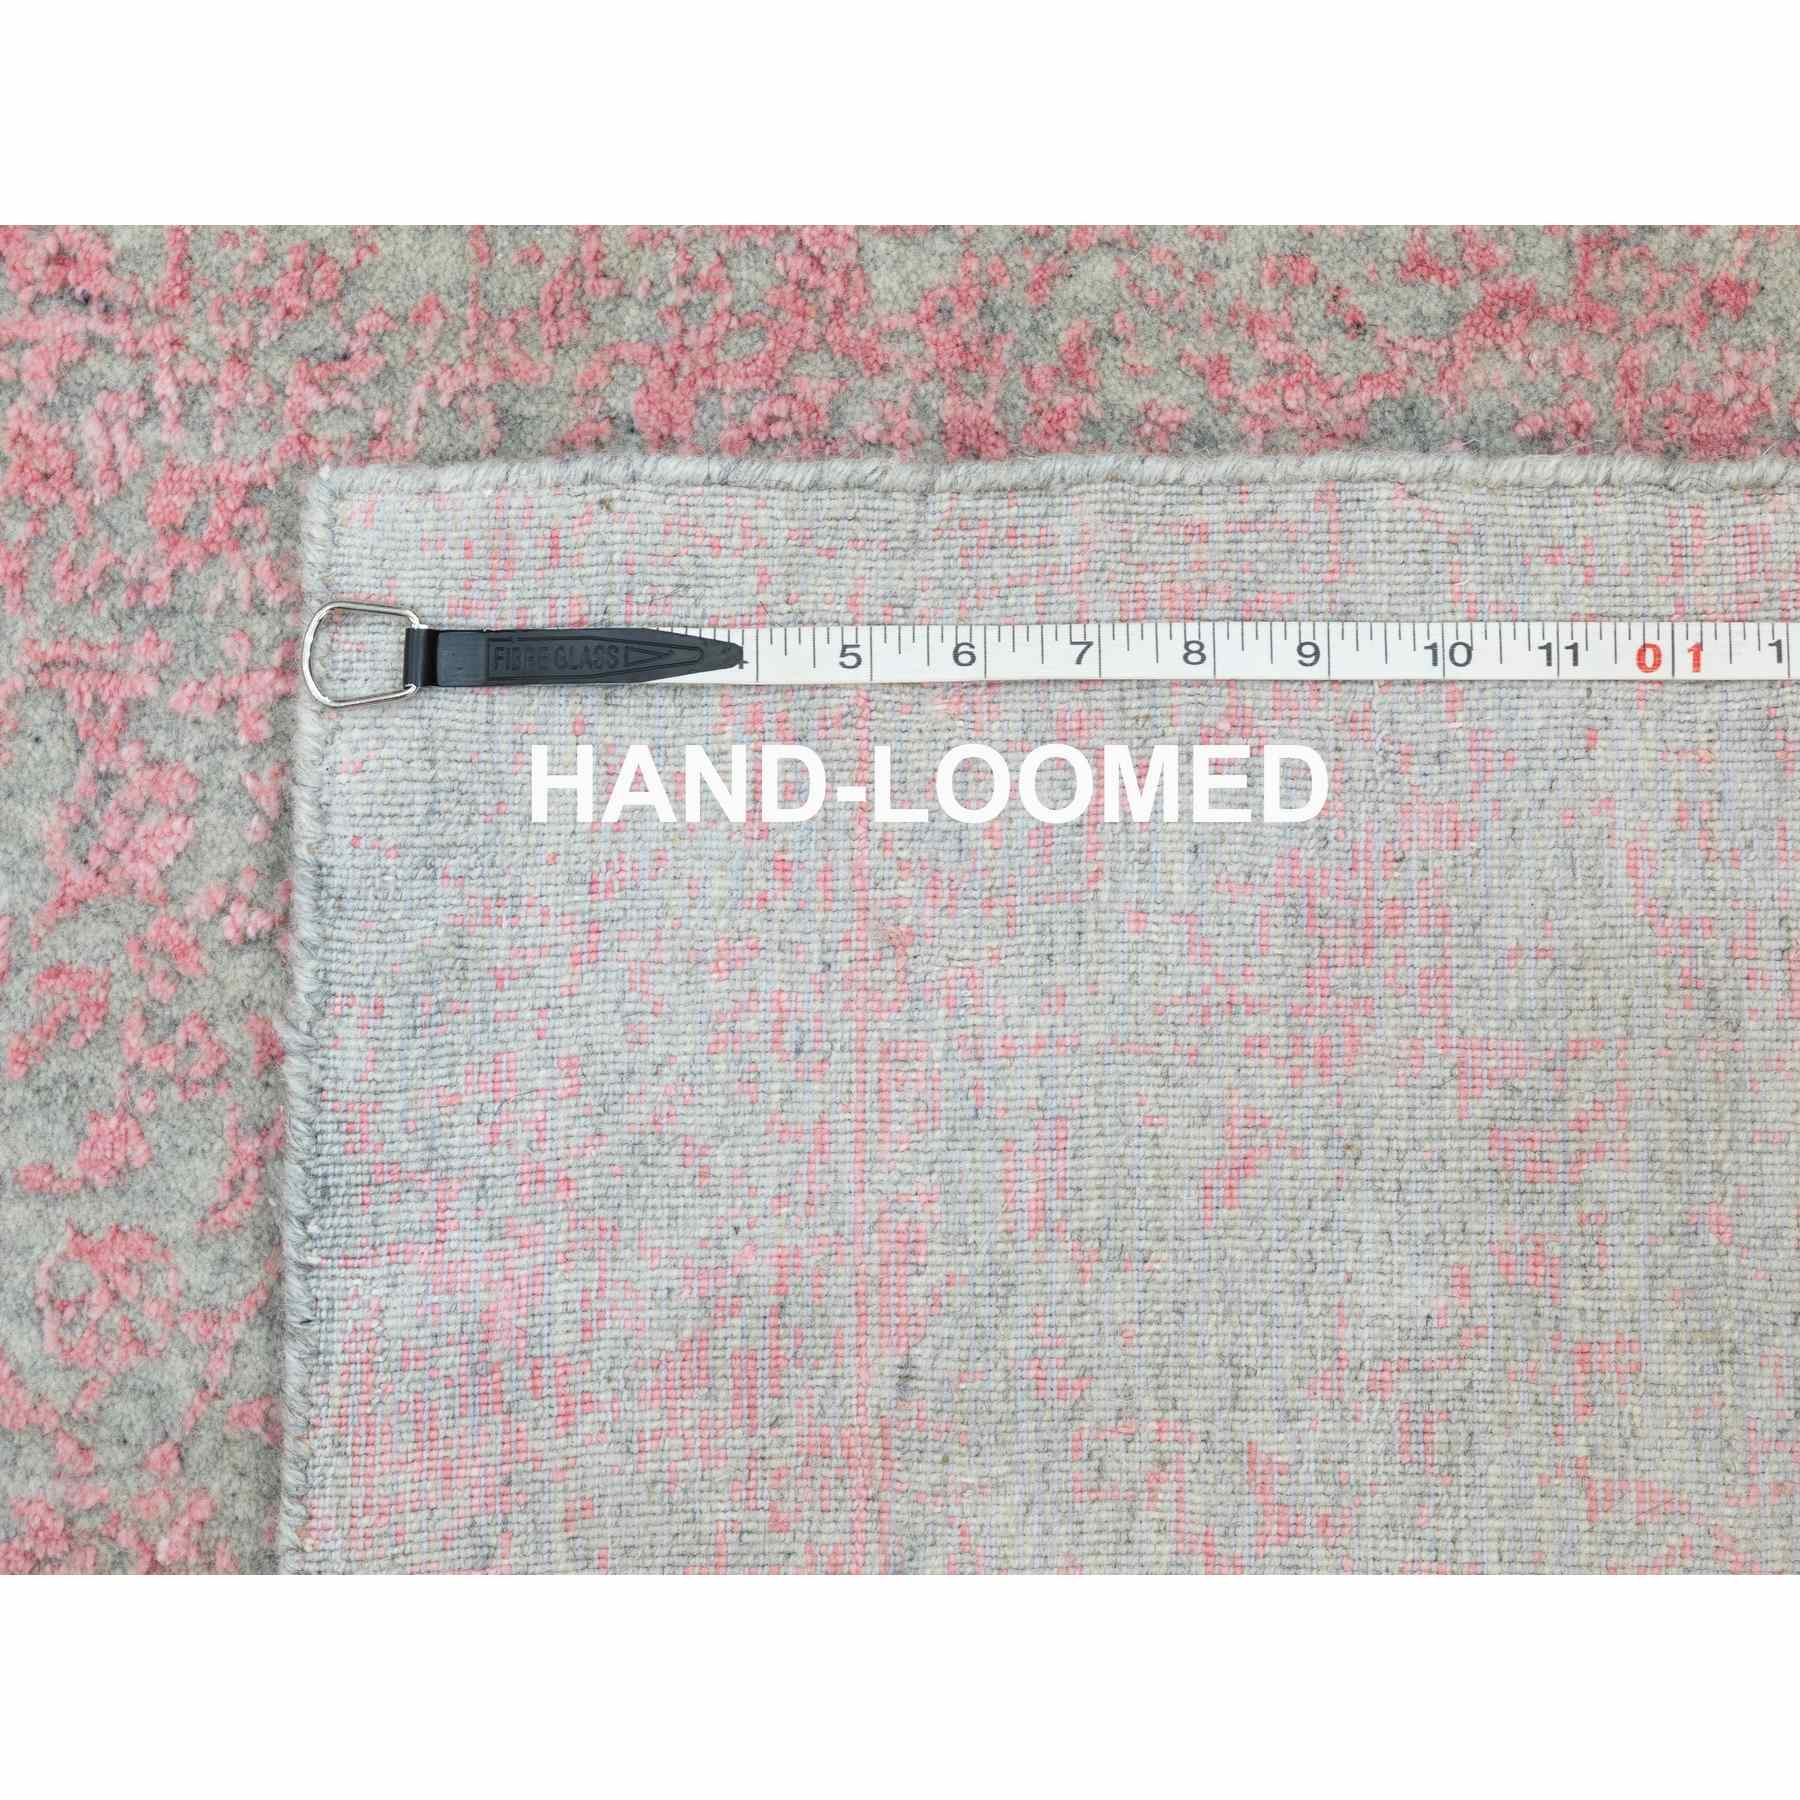 Hand-Loomed-Hand-Loomed-Rug-292915